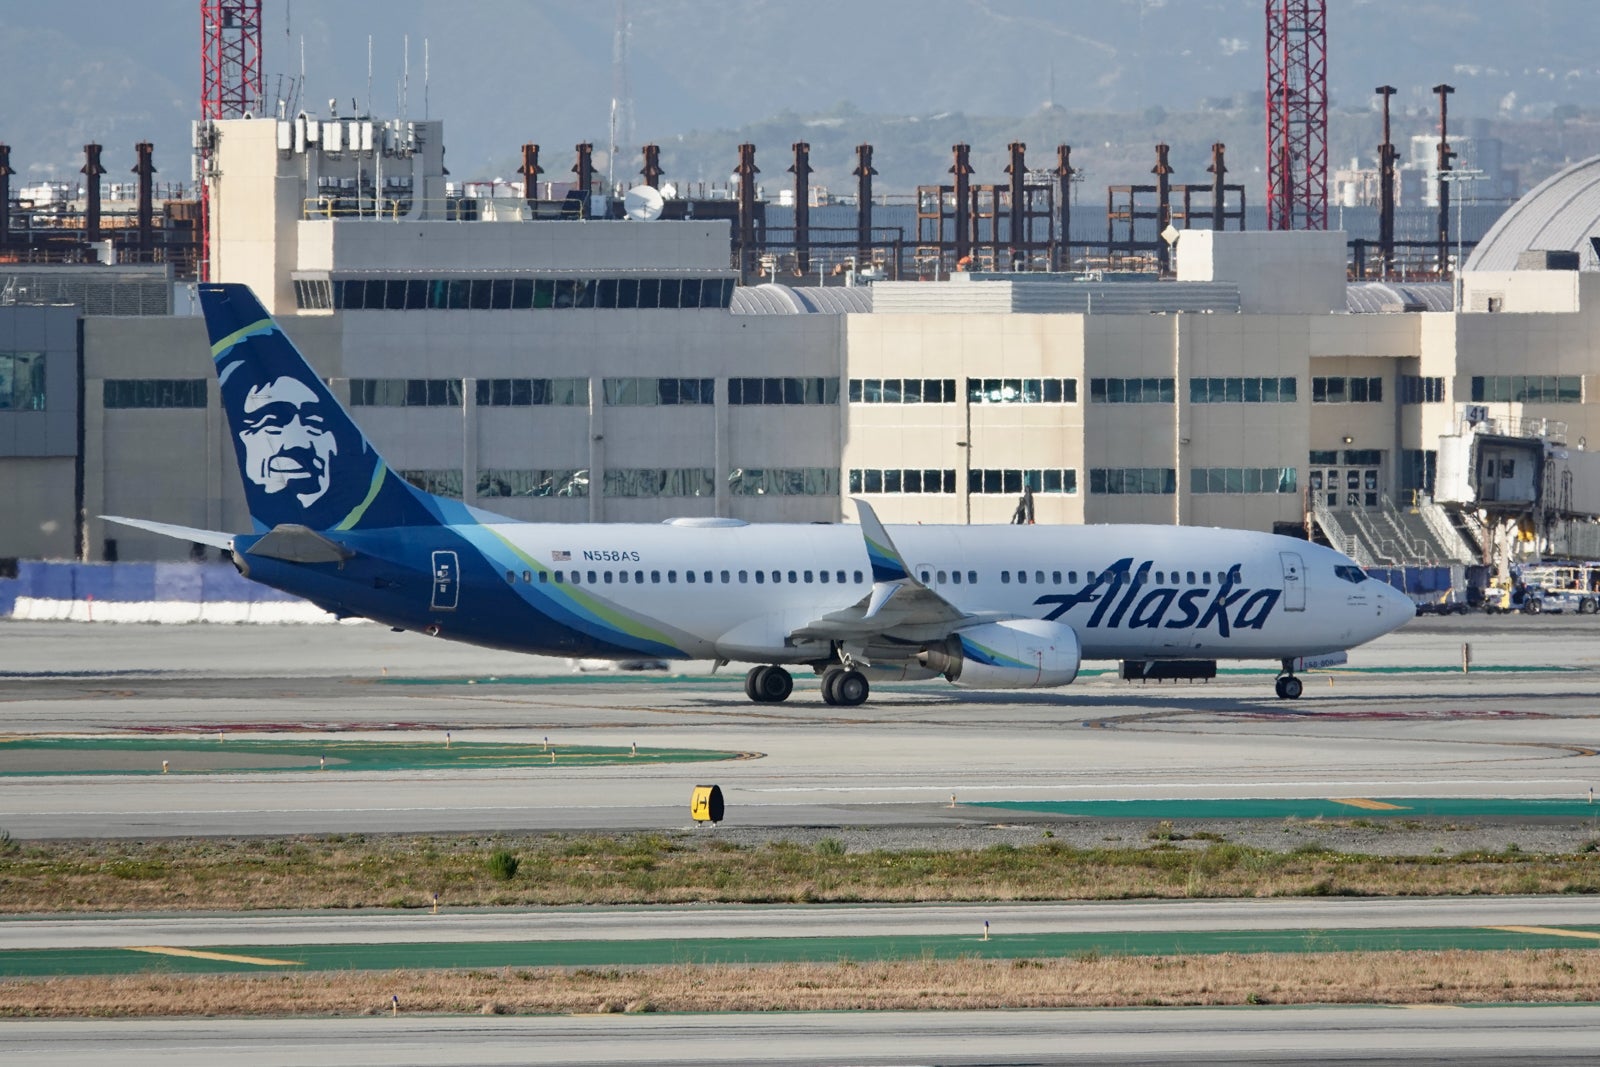 Alaska Boeing 737 at LAX